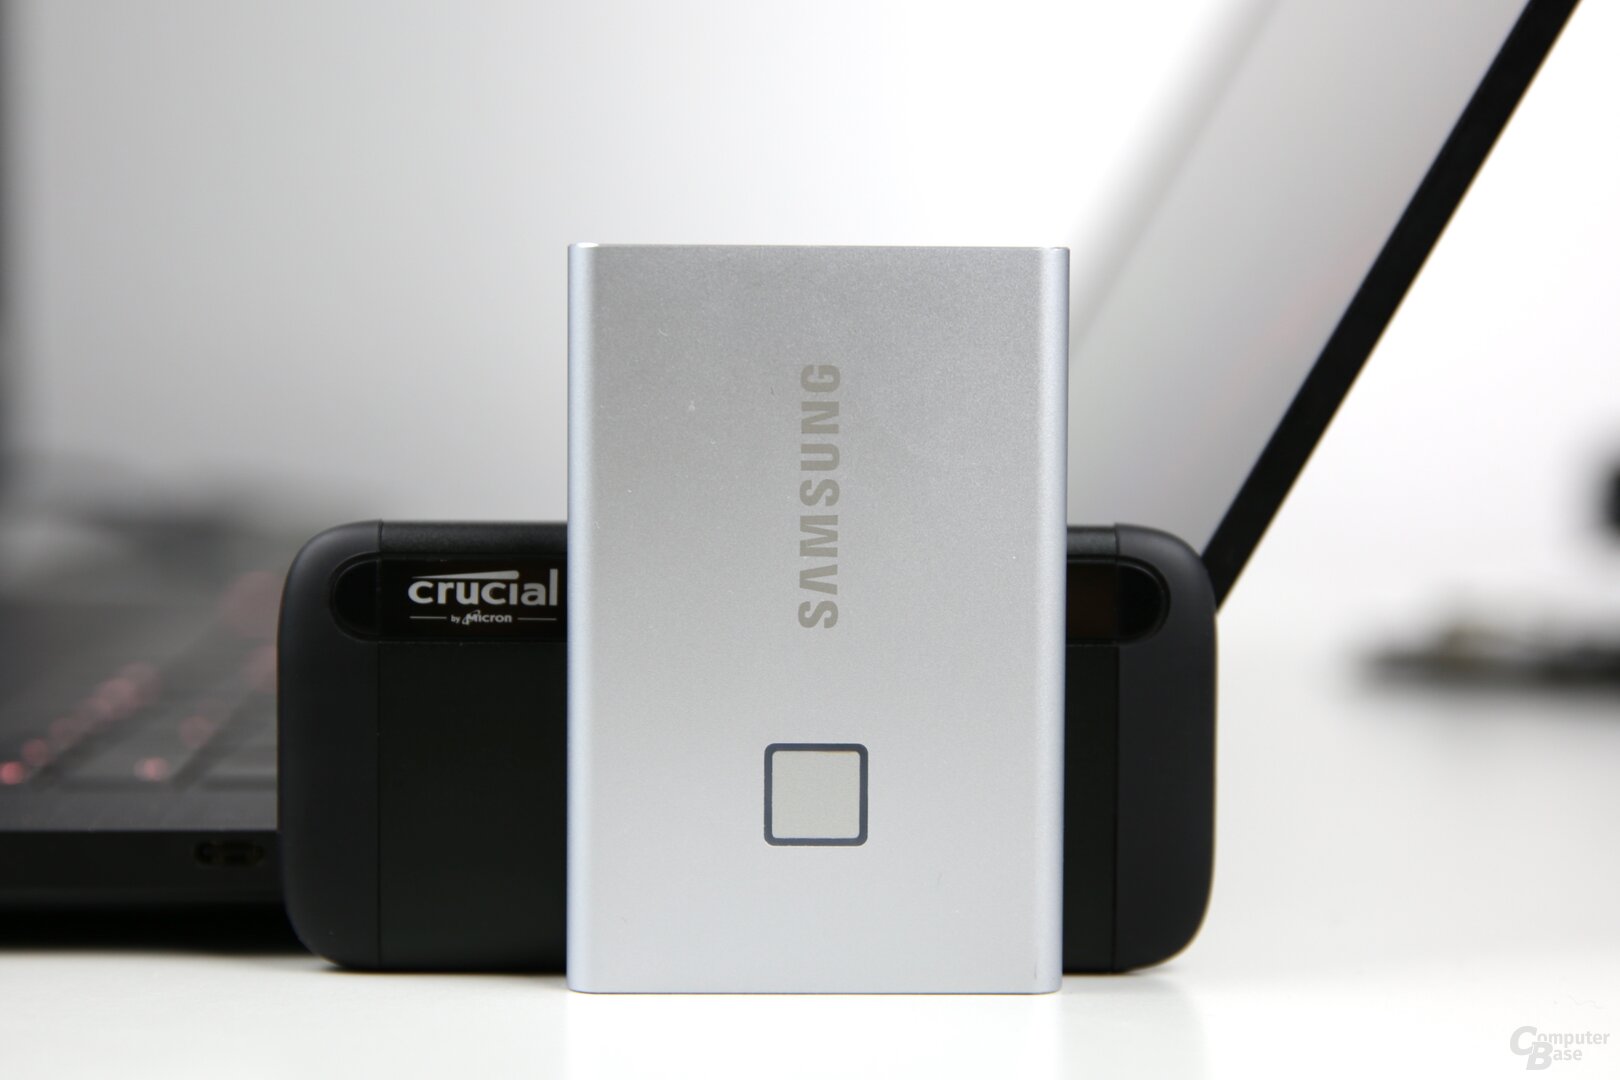 Konkurrenz am USB-3.1-Gen-2-Anschluss: Samsung T7 Touch gegen Crucial X8